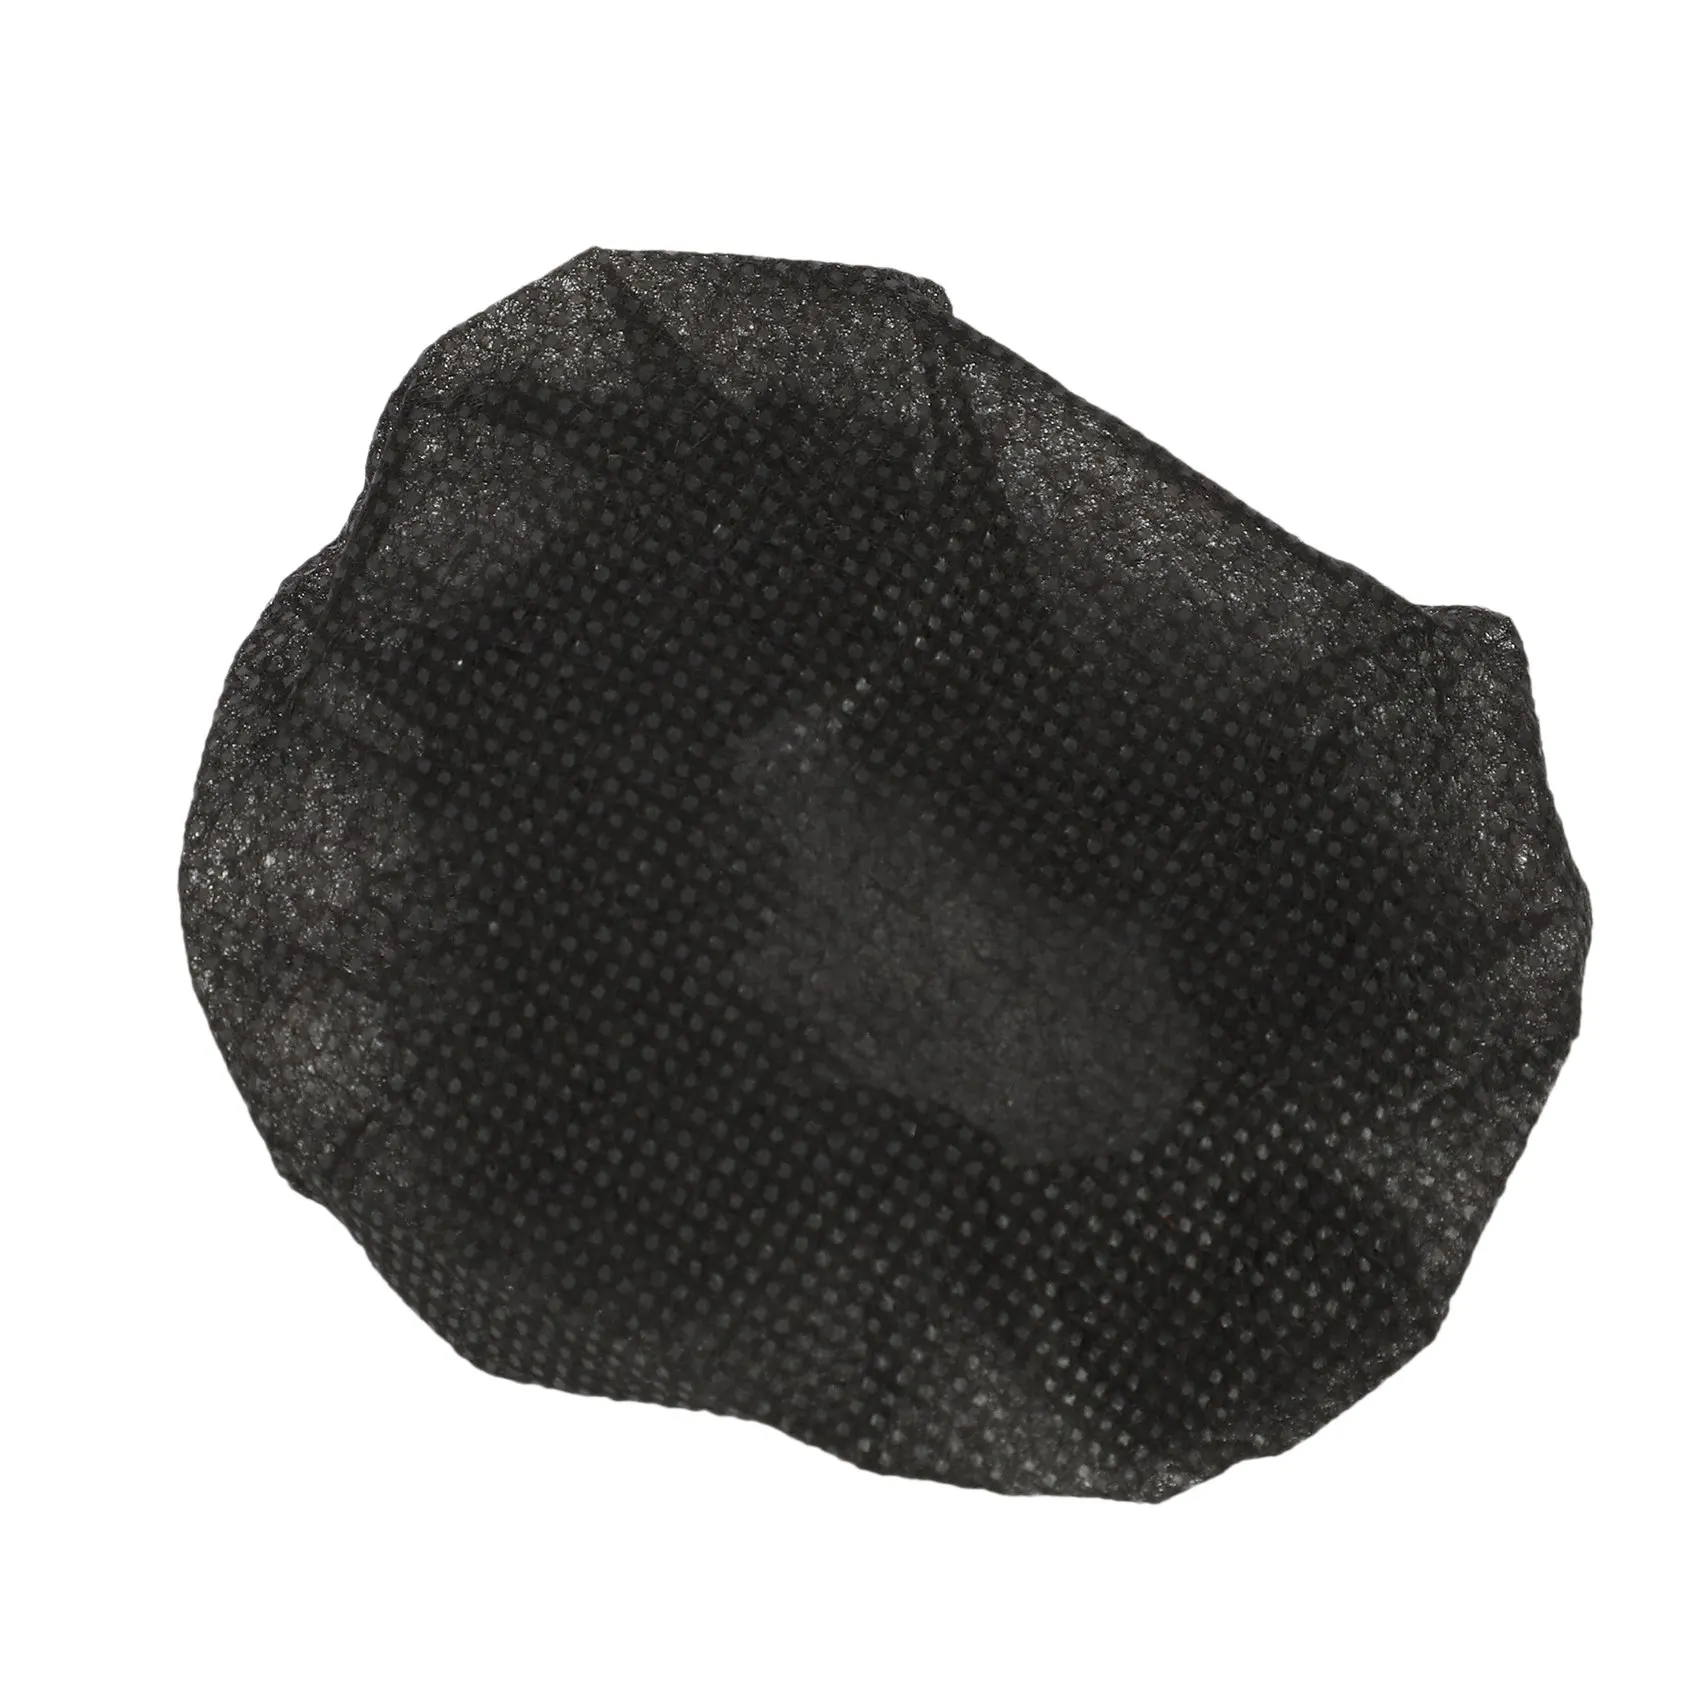 200 יח ' שחור חד פעמיות מיקרופון מכסה קריוקי אנטי התזה מיקרופון כיסוי חסין אבק אביזרים - 3